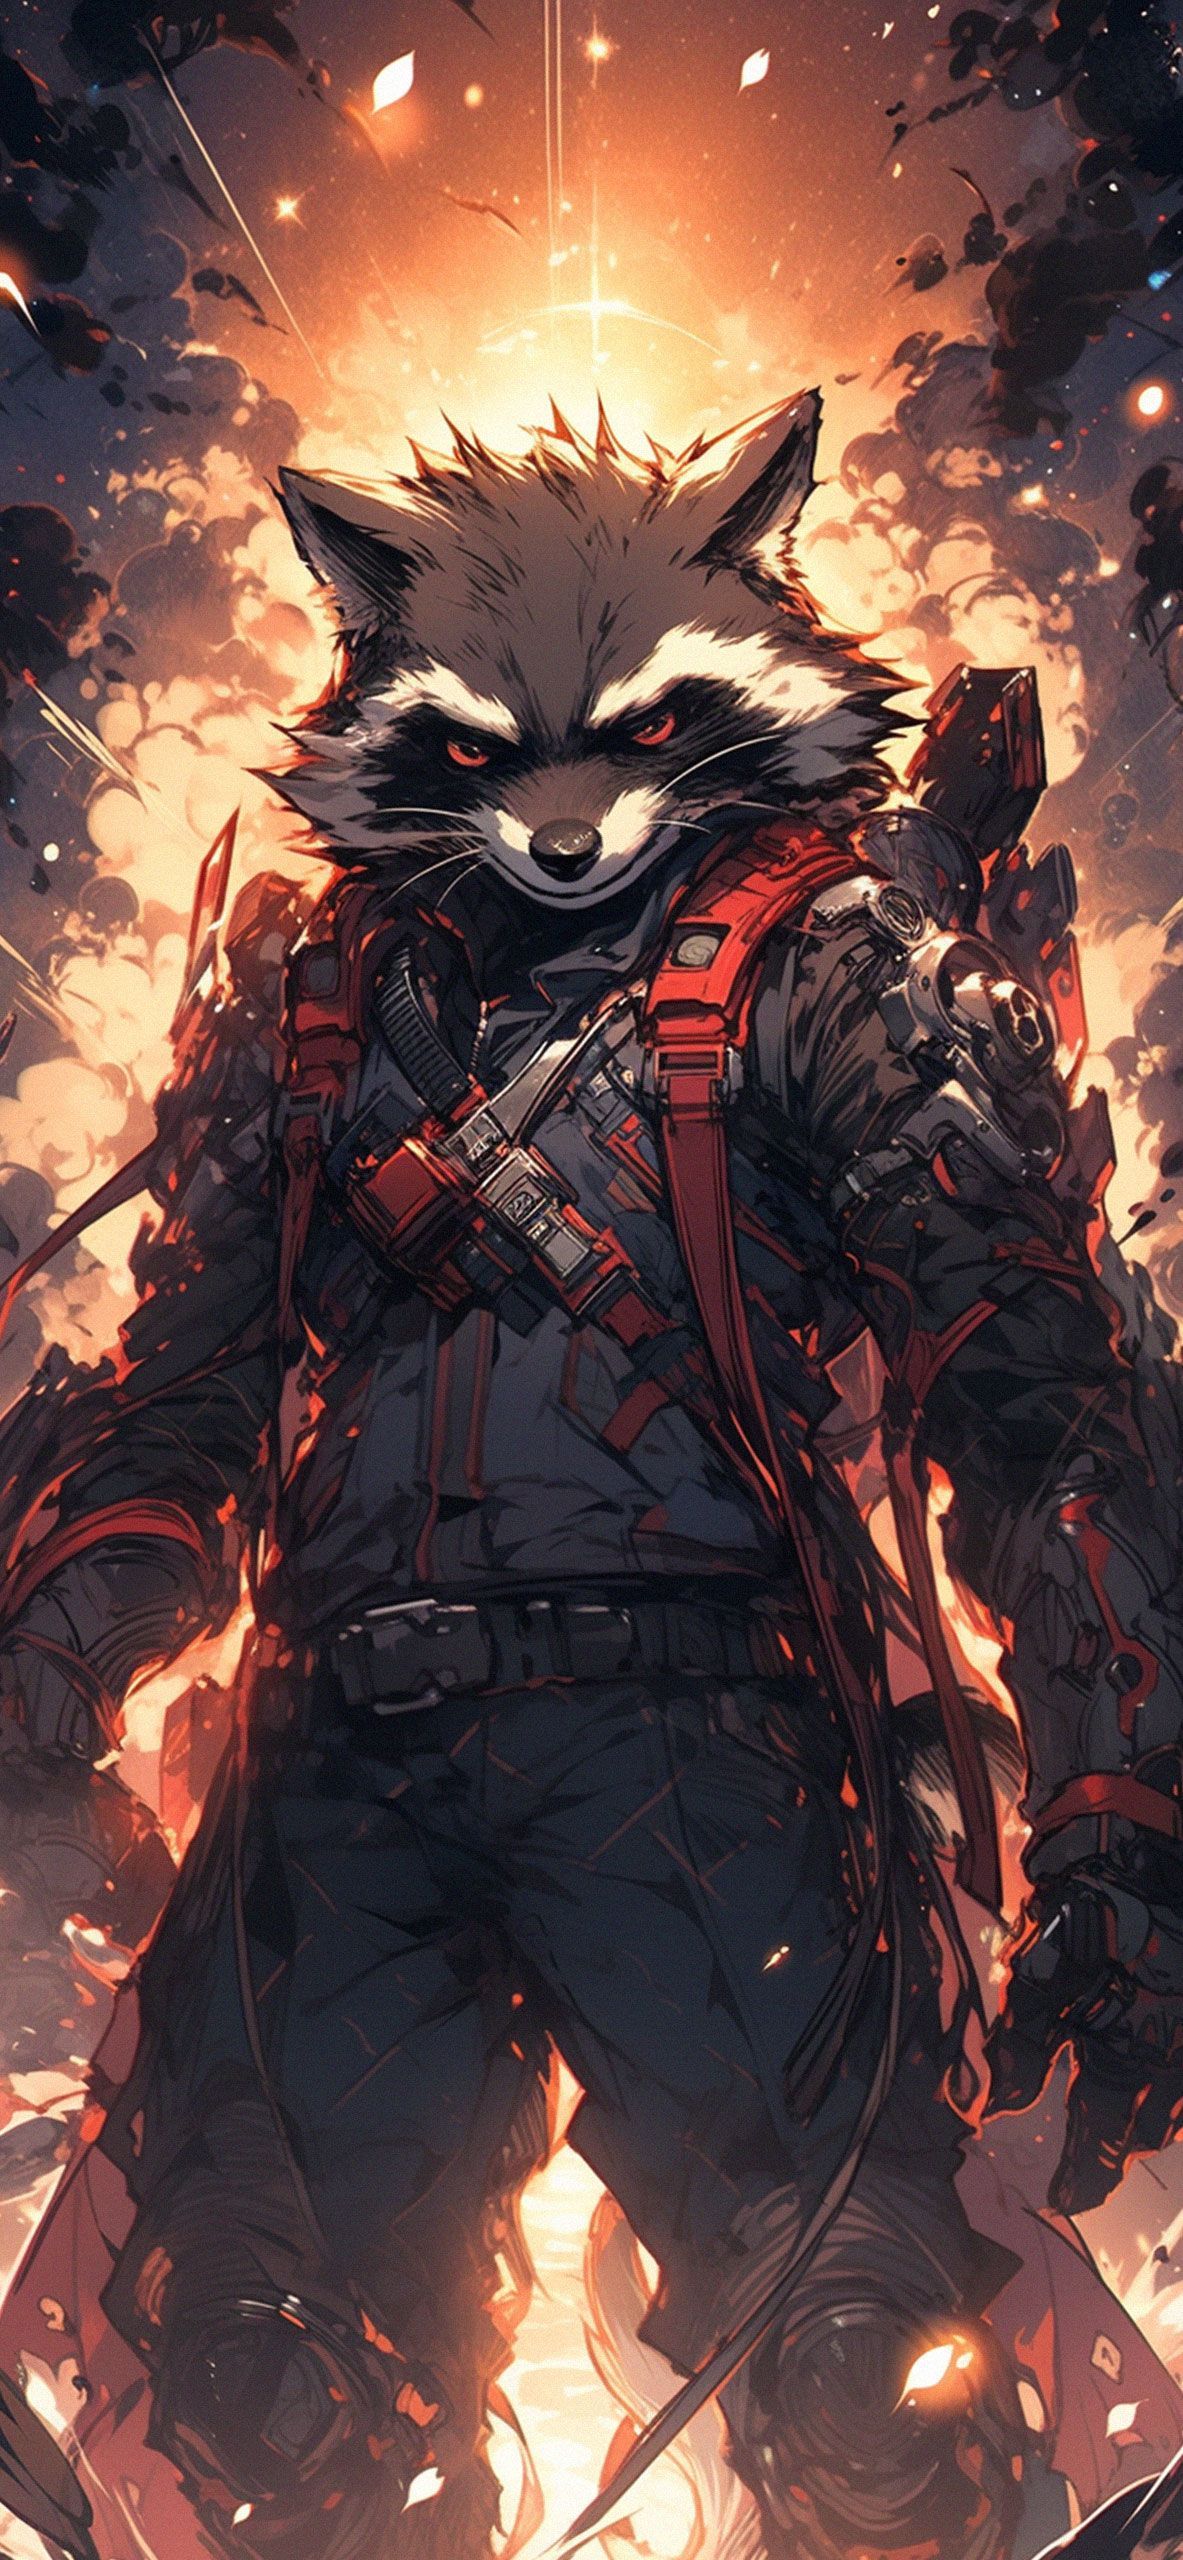 Marvel Rocket Raccoon Epic Wallpaper Raccoon Wallpaper